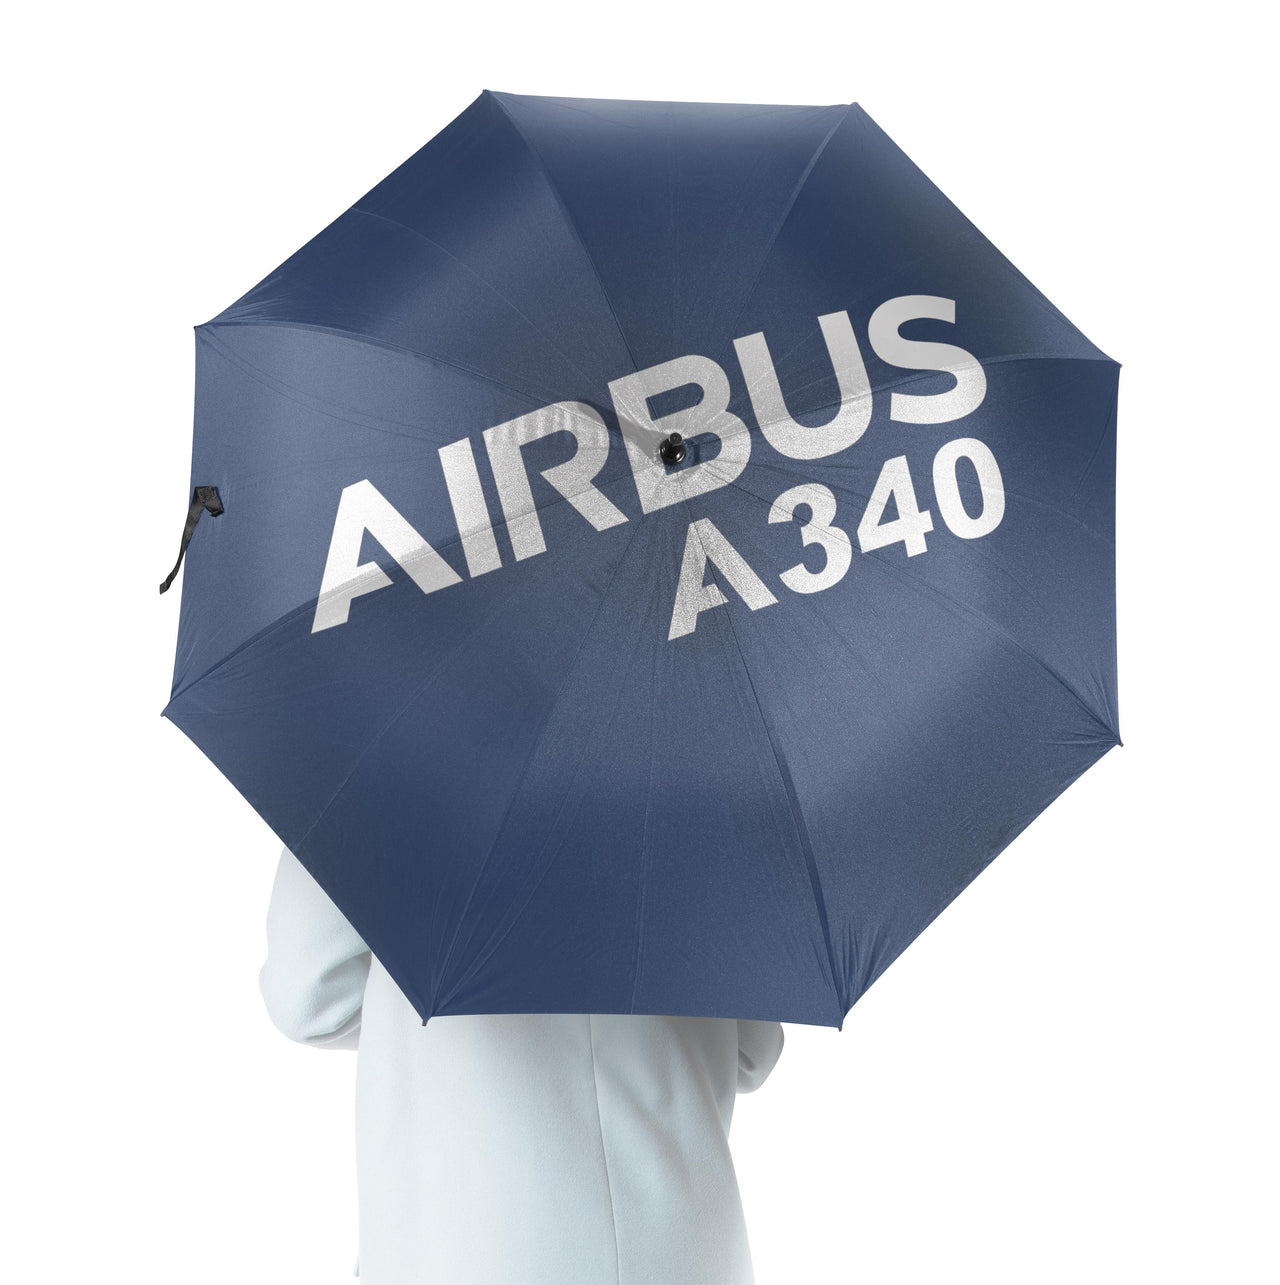 Airbus A340 & Text Designed Umbrella